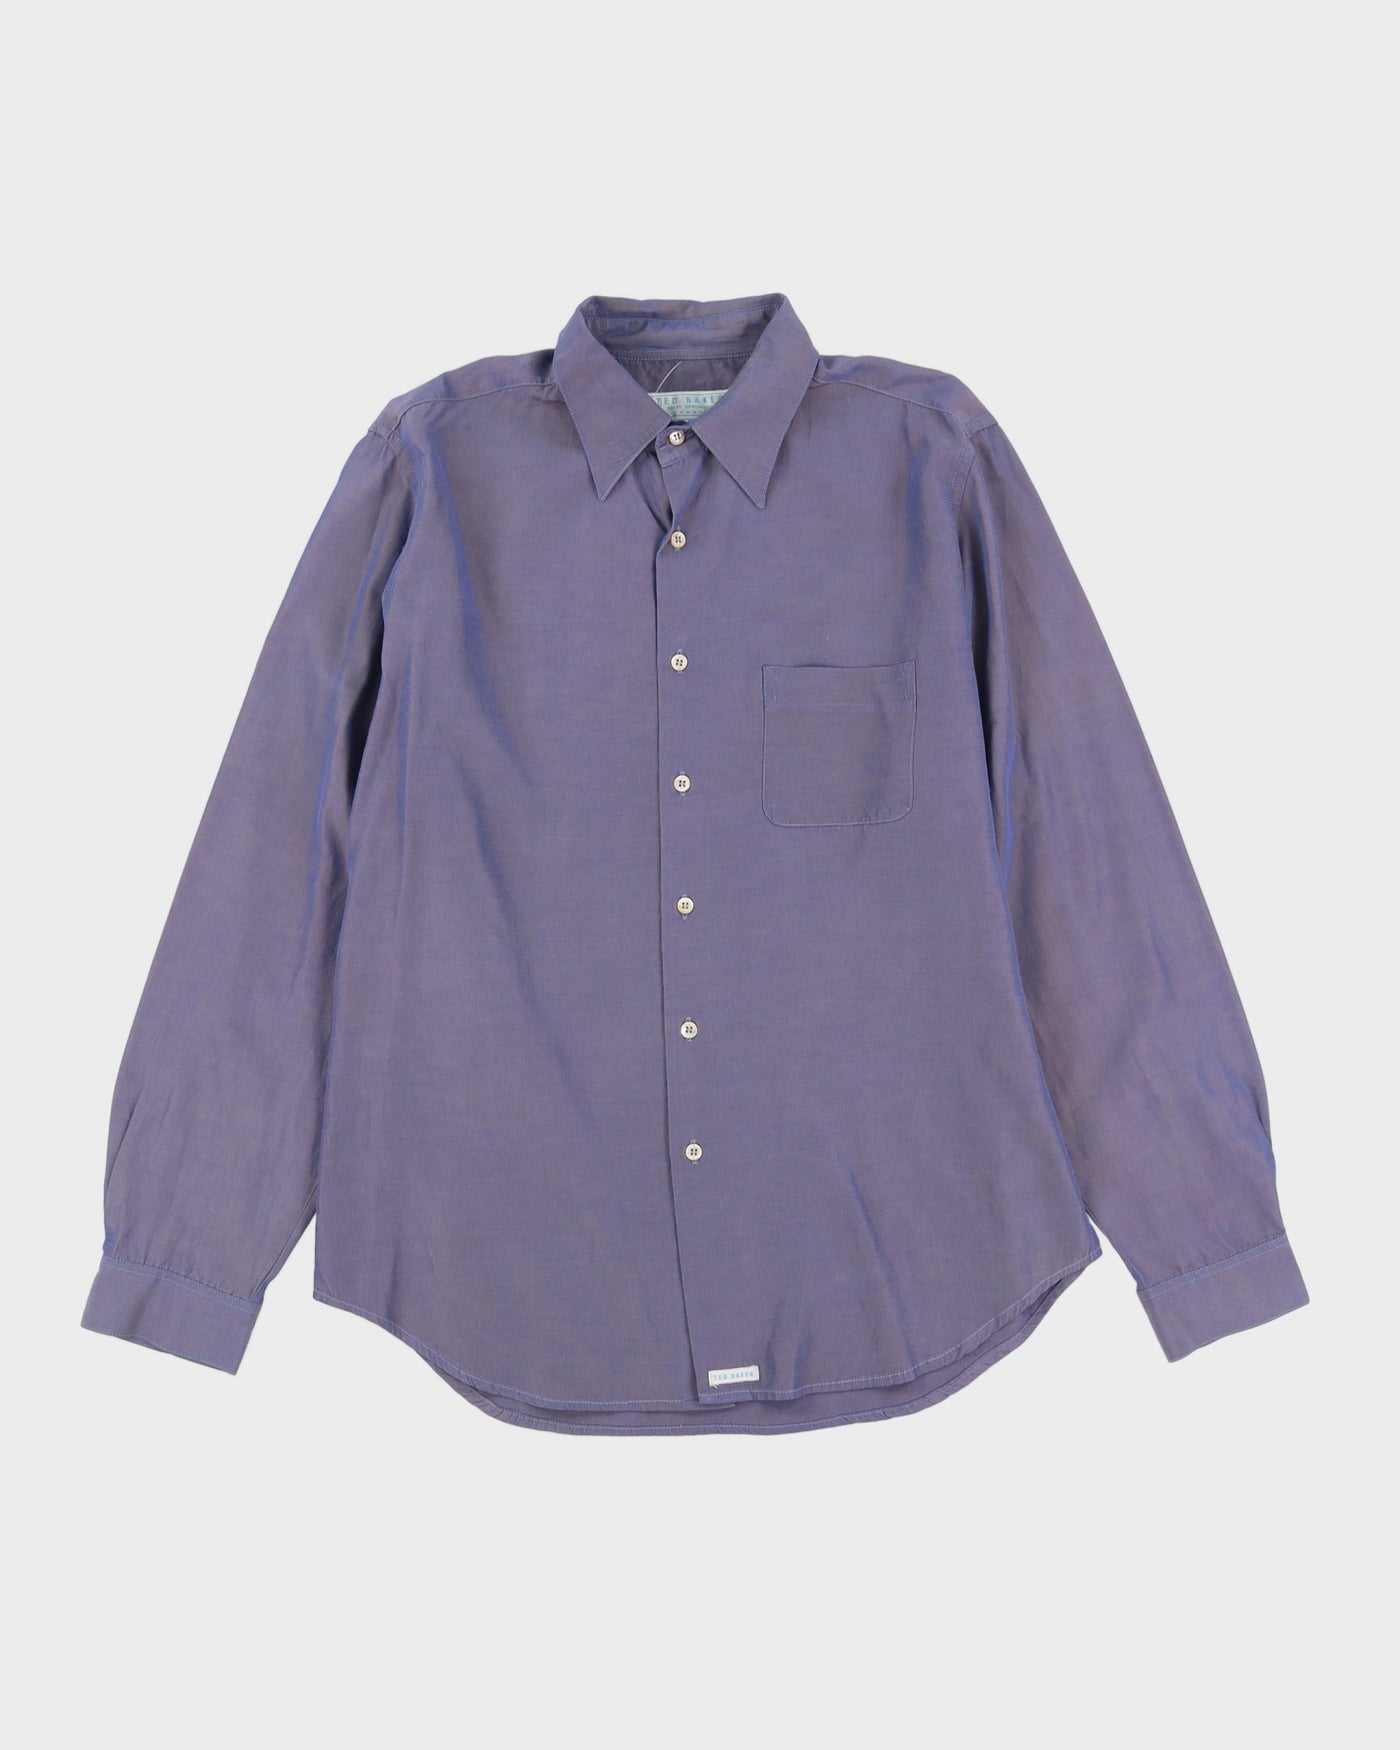 Vintage 90s Ted Baker Blue Long Sleeved Shirt - M